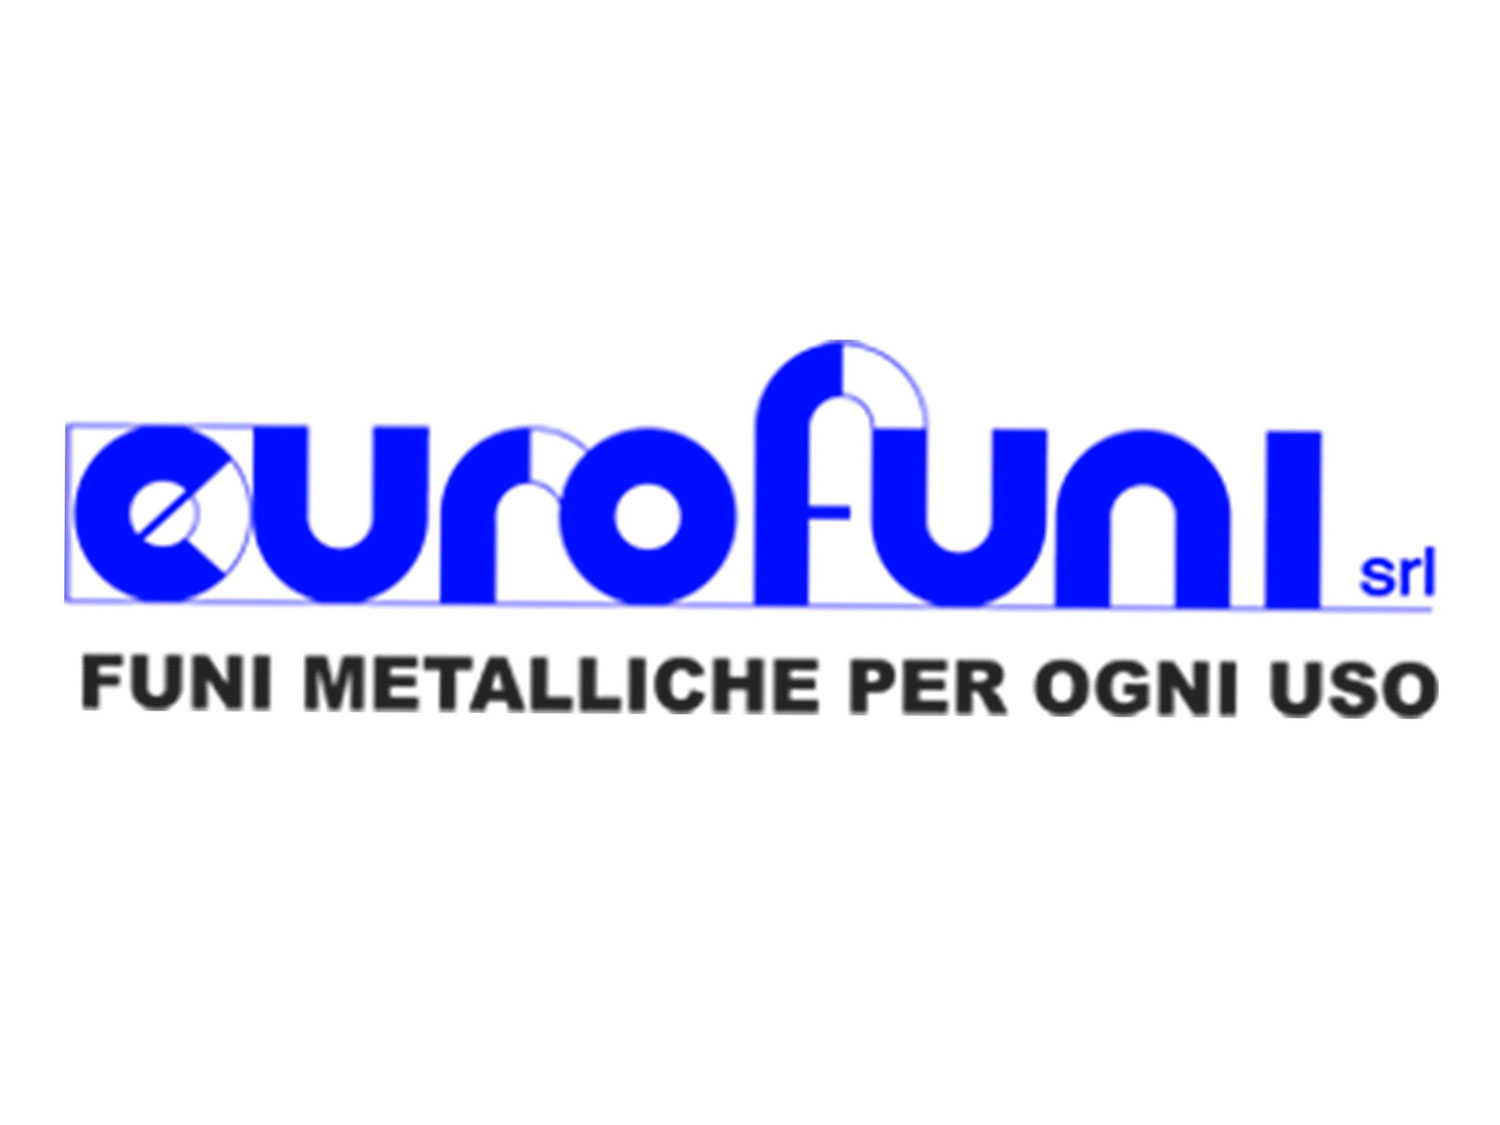 Eurofuni